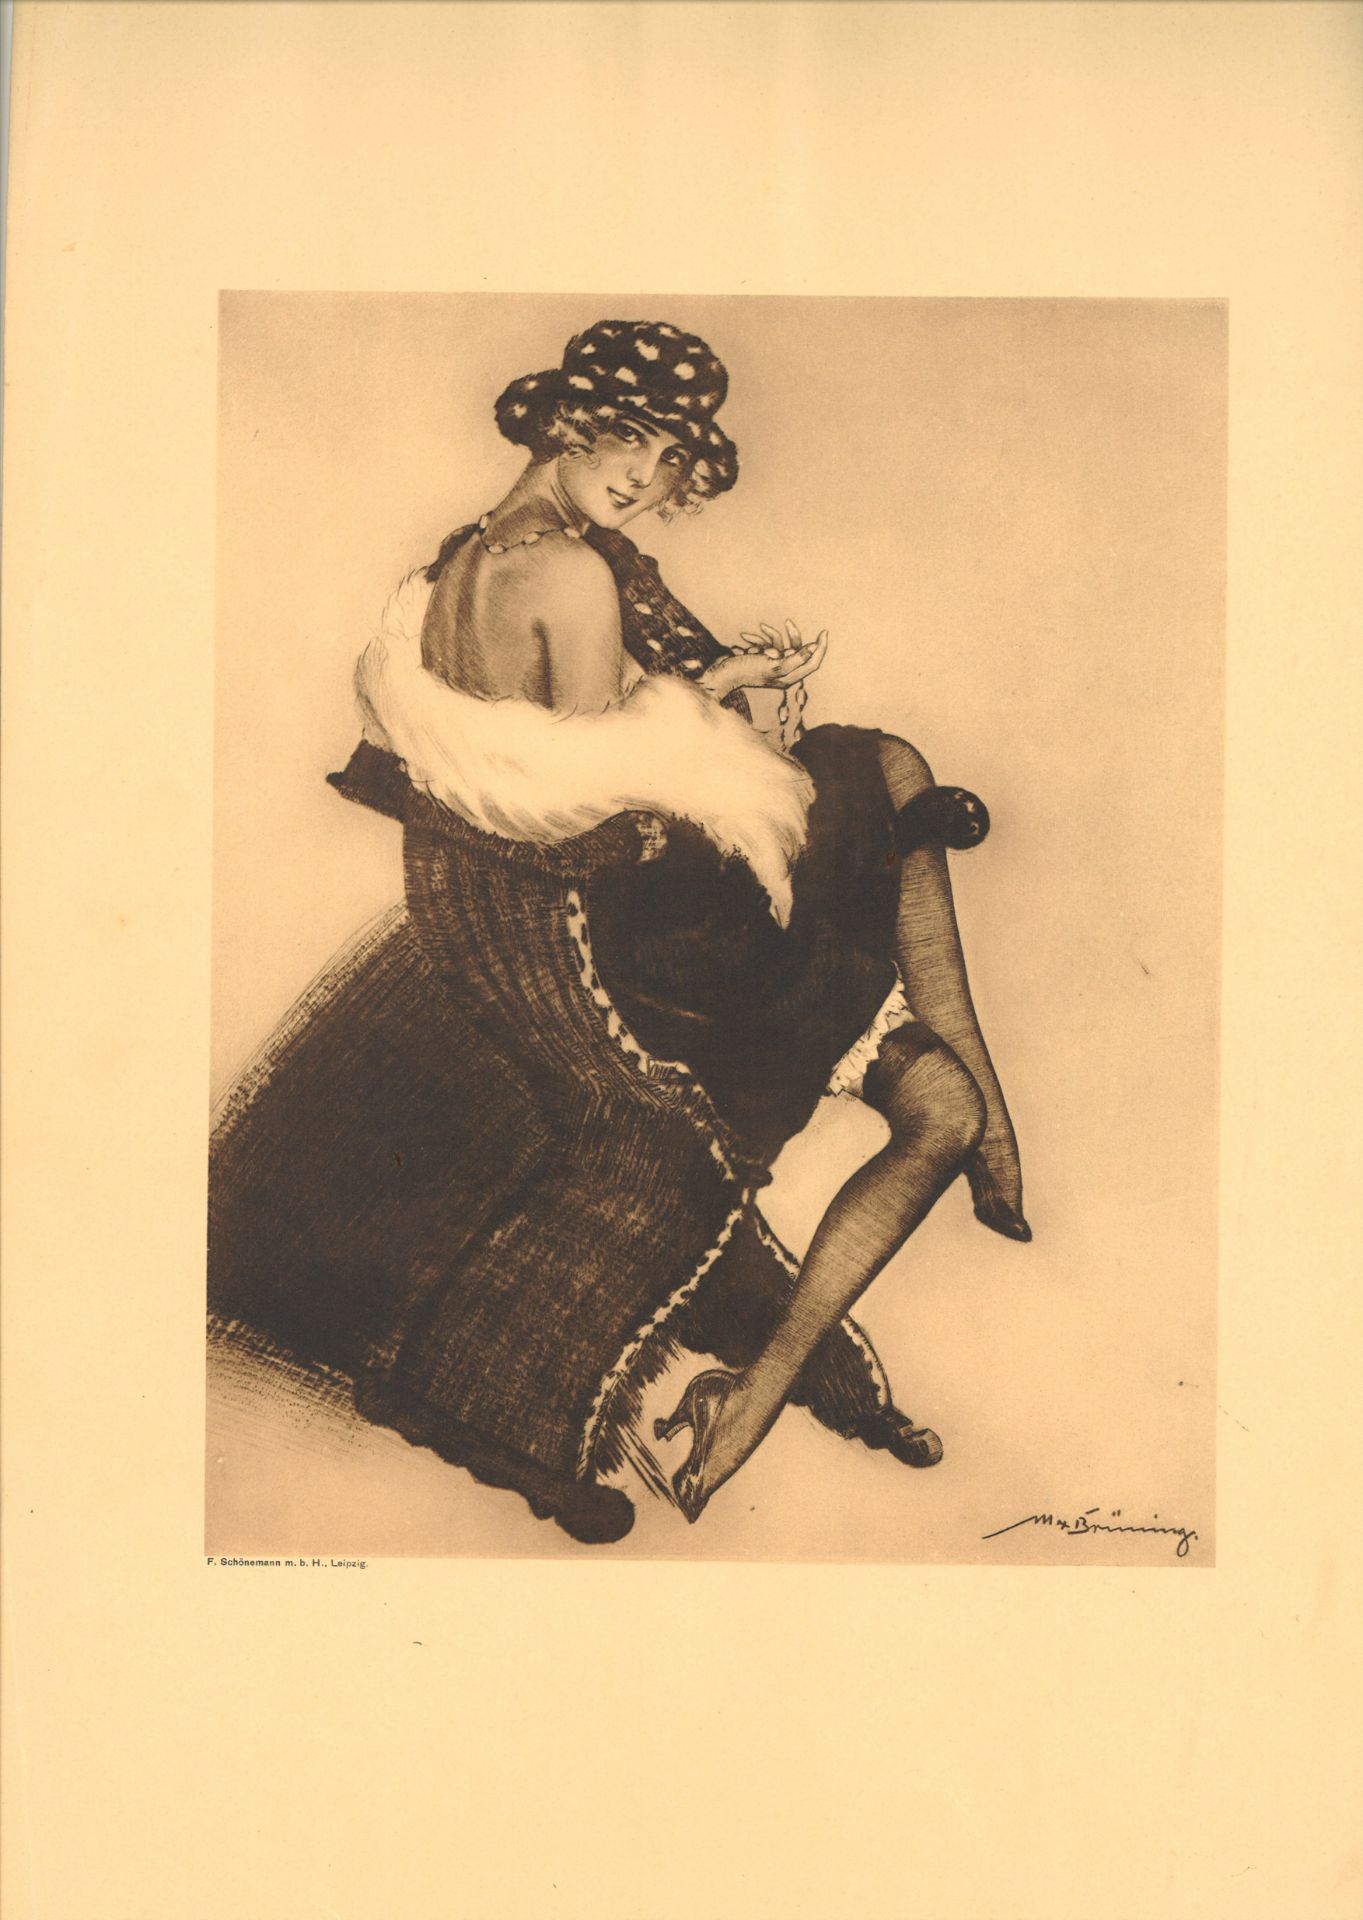 Max Brünning (1887-1968), Farbradierung "Mädchen im Pelz". Gesamtmaße des Blattes: Höhe ca. 48 cm,